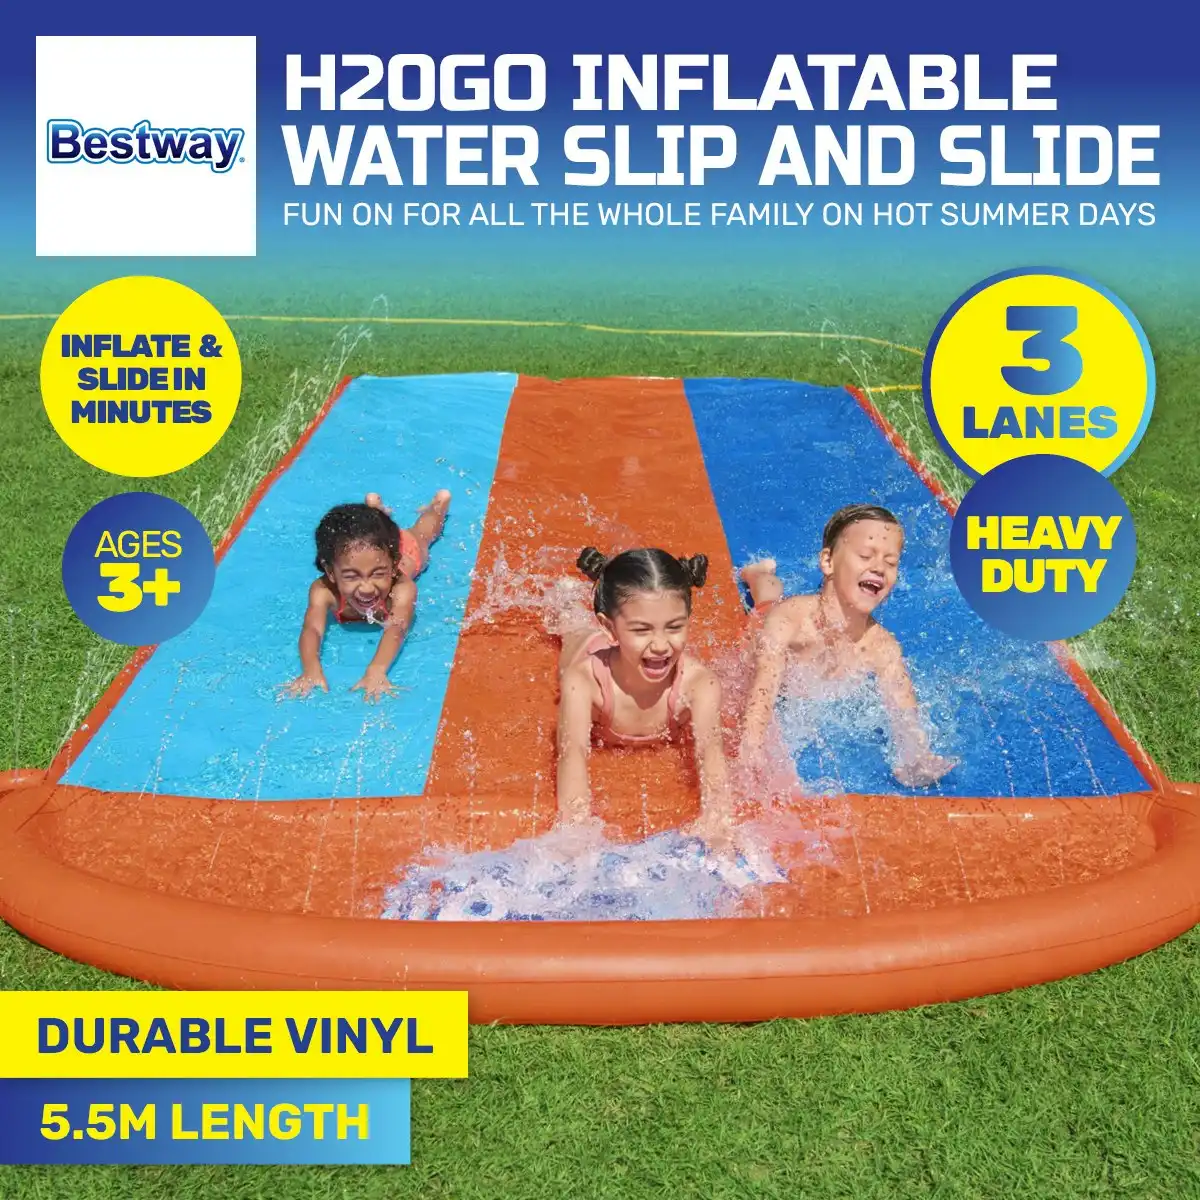 Bestway 4.8m Triple Lane Inflatable Water Slide Built-In Water Jets